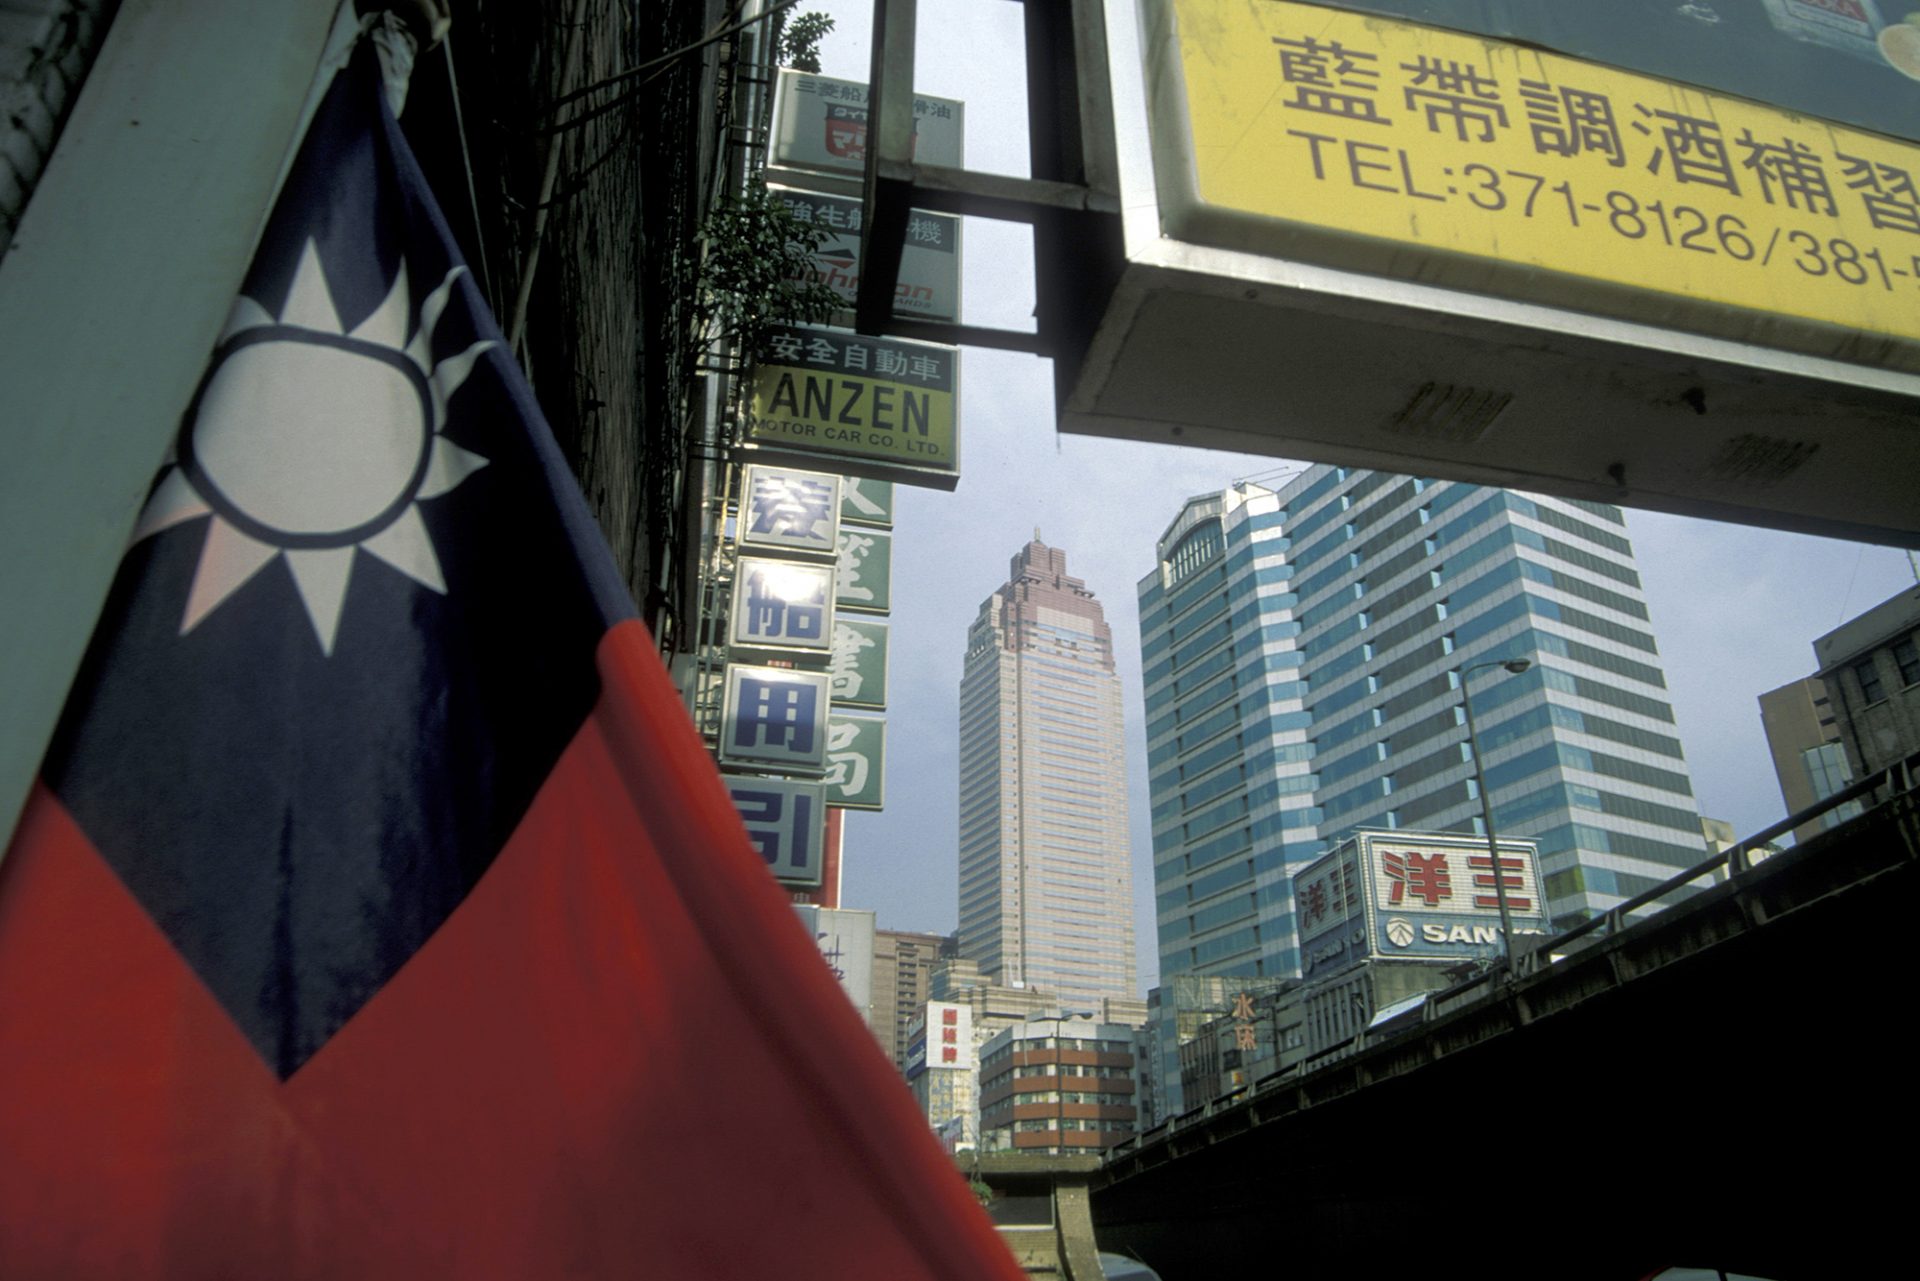 Dezinformarea chineză vrea ca cetățenii taiwanezi să creadă că SUA este inamicul